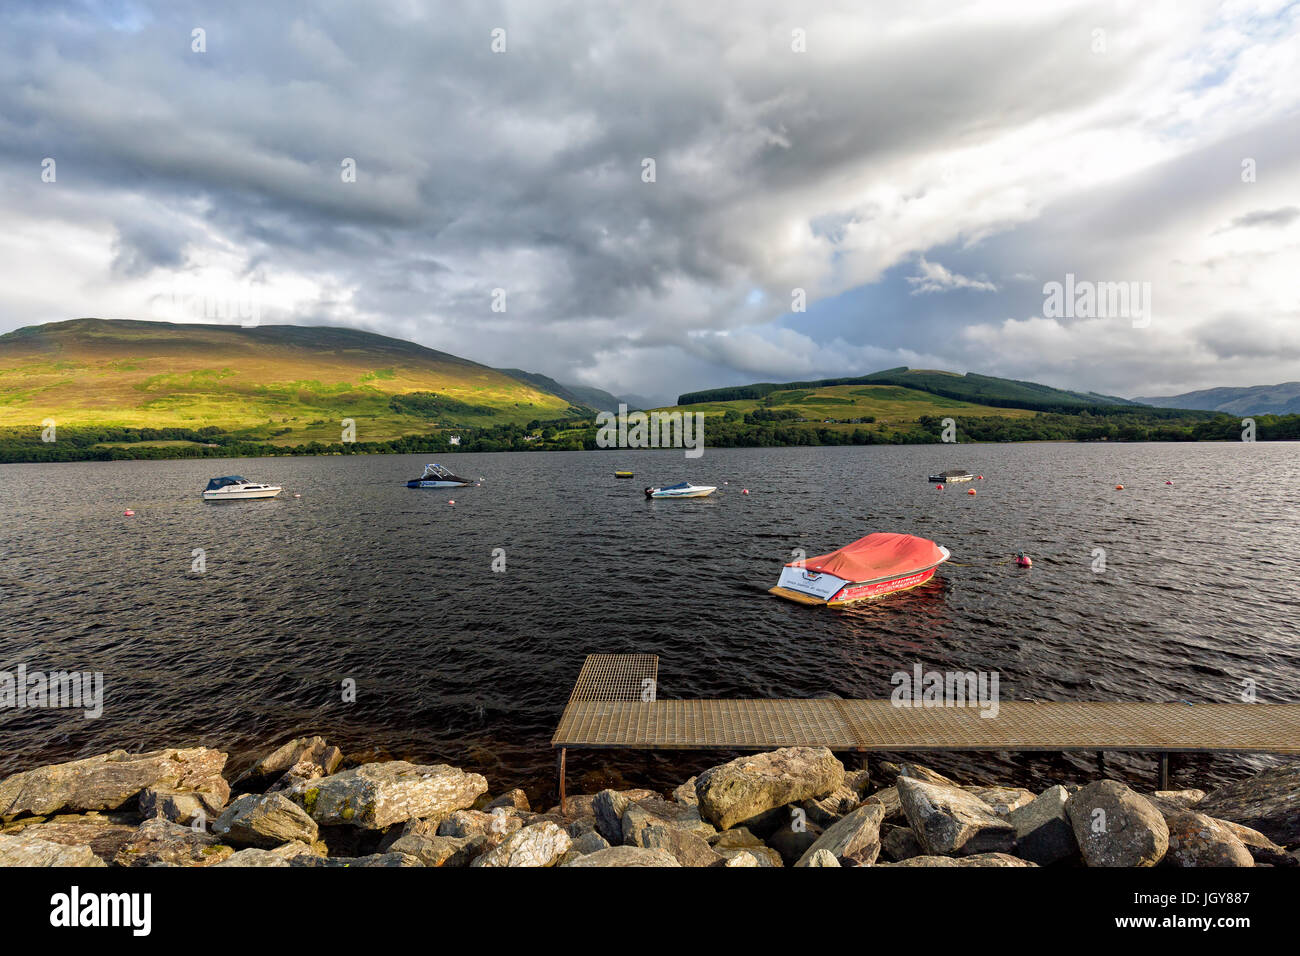 Boats in Loch Earn, Scotland. Stock Photo